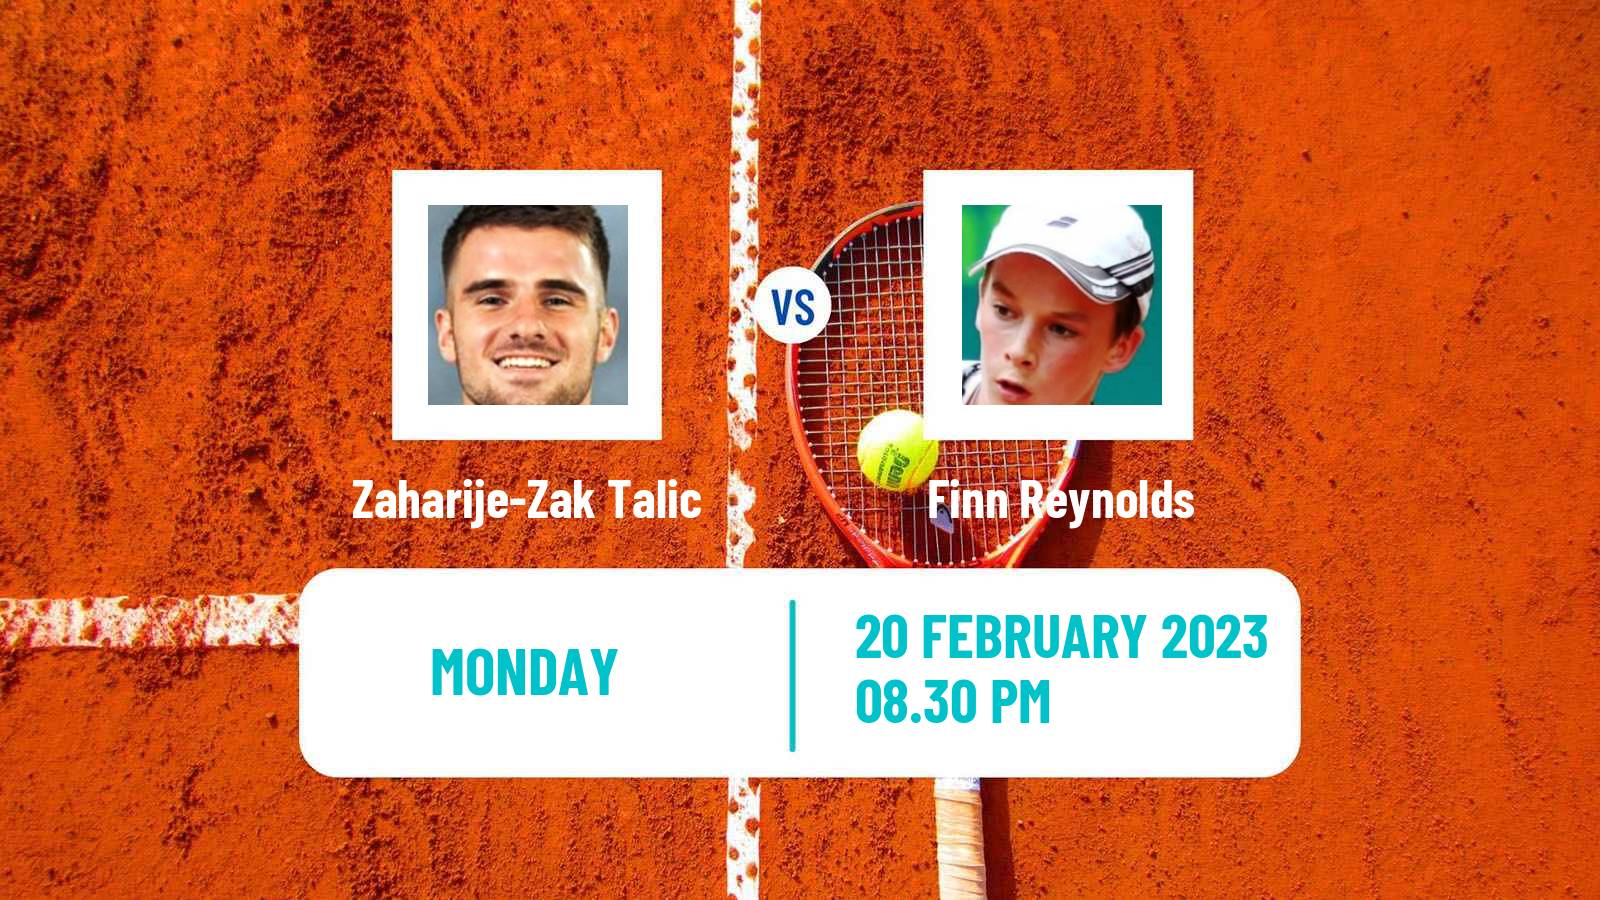 Tennis ITF Tournaments Zaharije-Zak Talic - Finn Reynolds